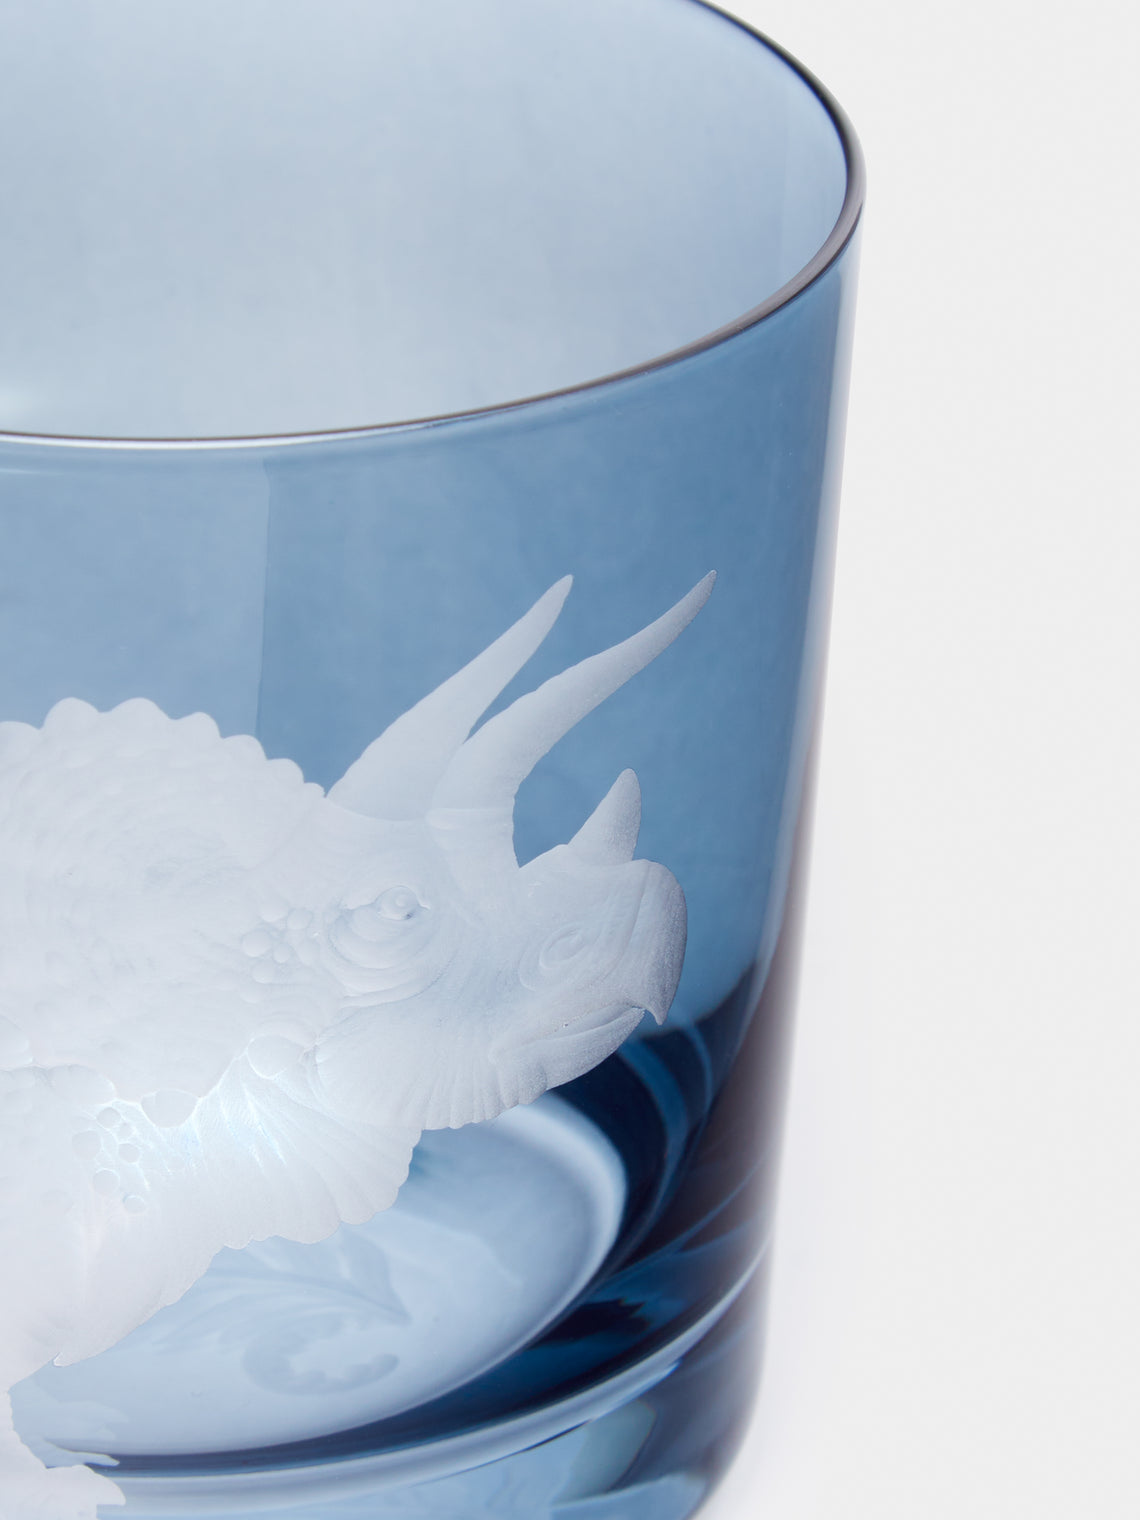 Artel - Tricerotops Hand-Engraved Crystal Glass - Blue - ABASK